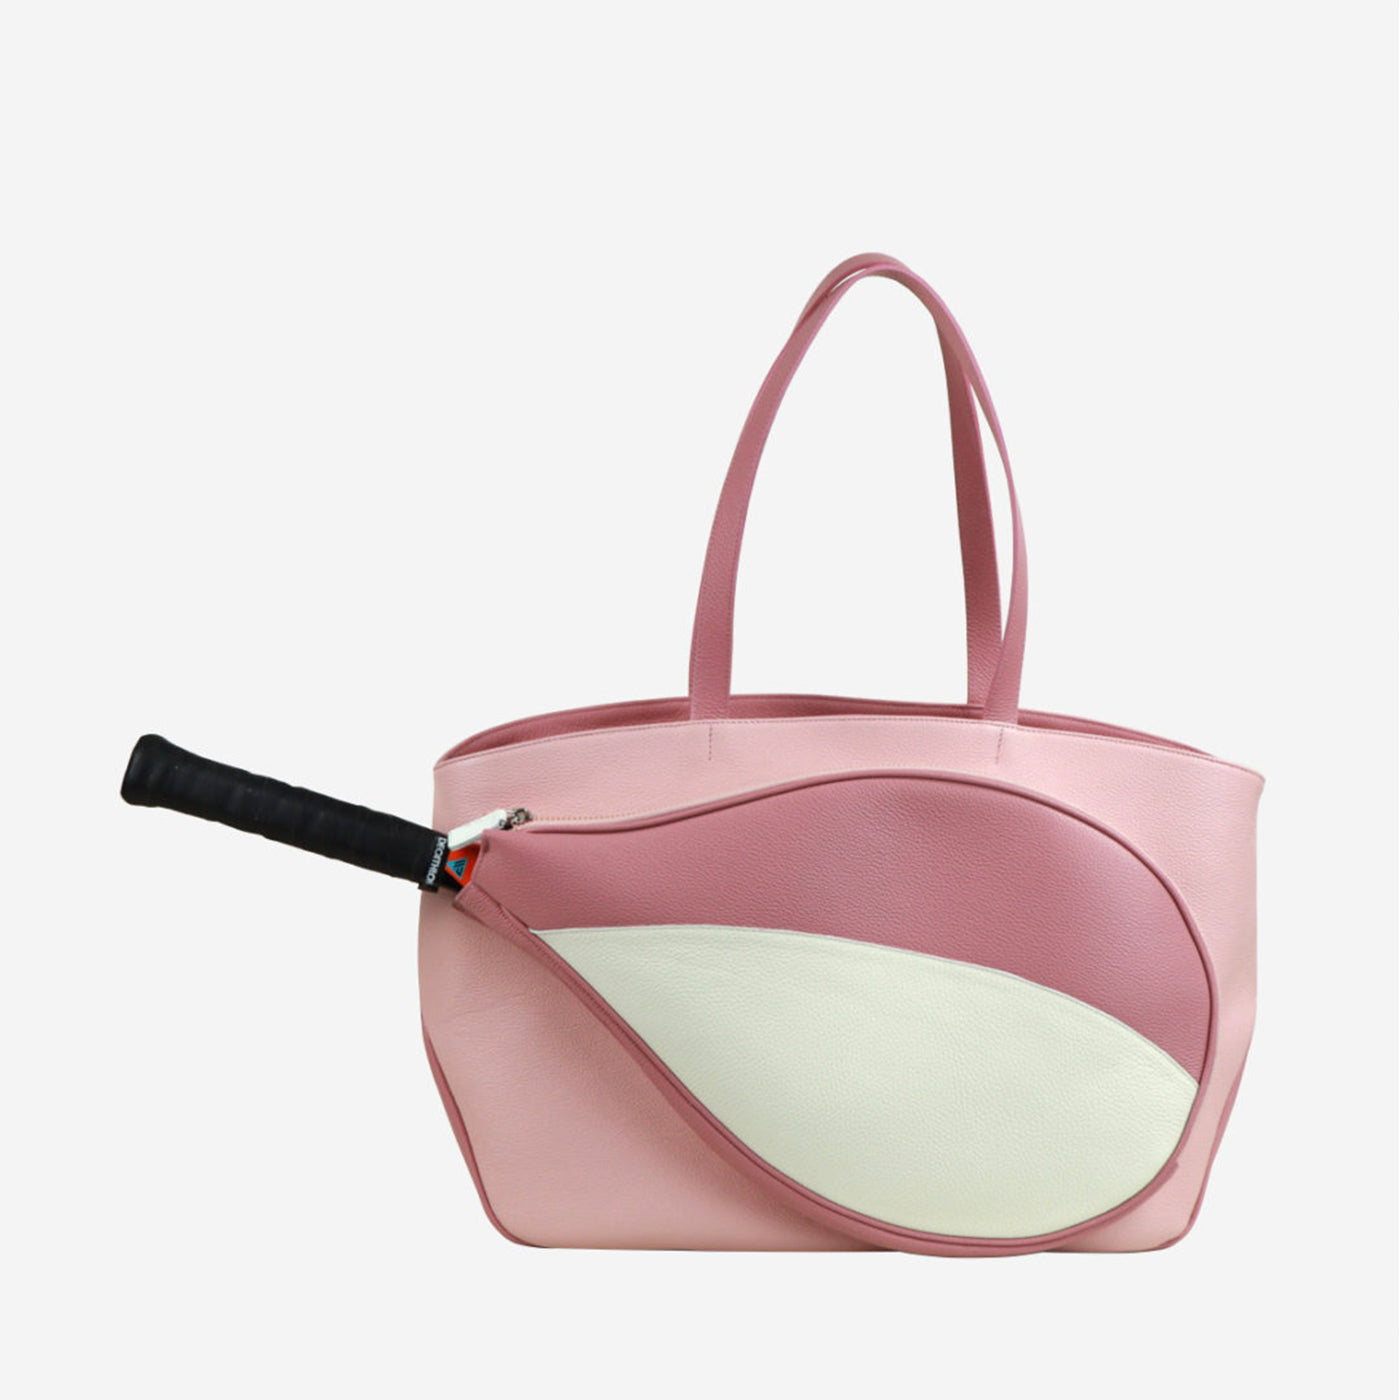 Sporttasche in Rosa und Weiß mit Tasche in Form eines Tennisschlägers - Alternative Ansicht 5